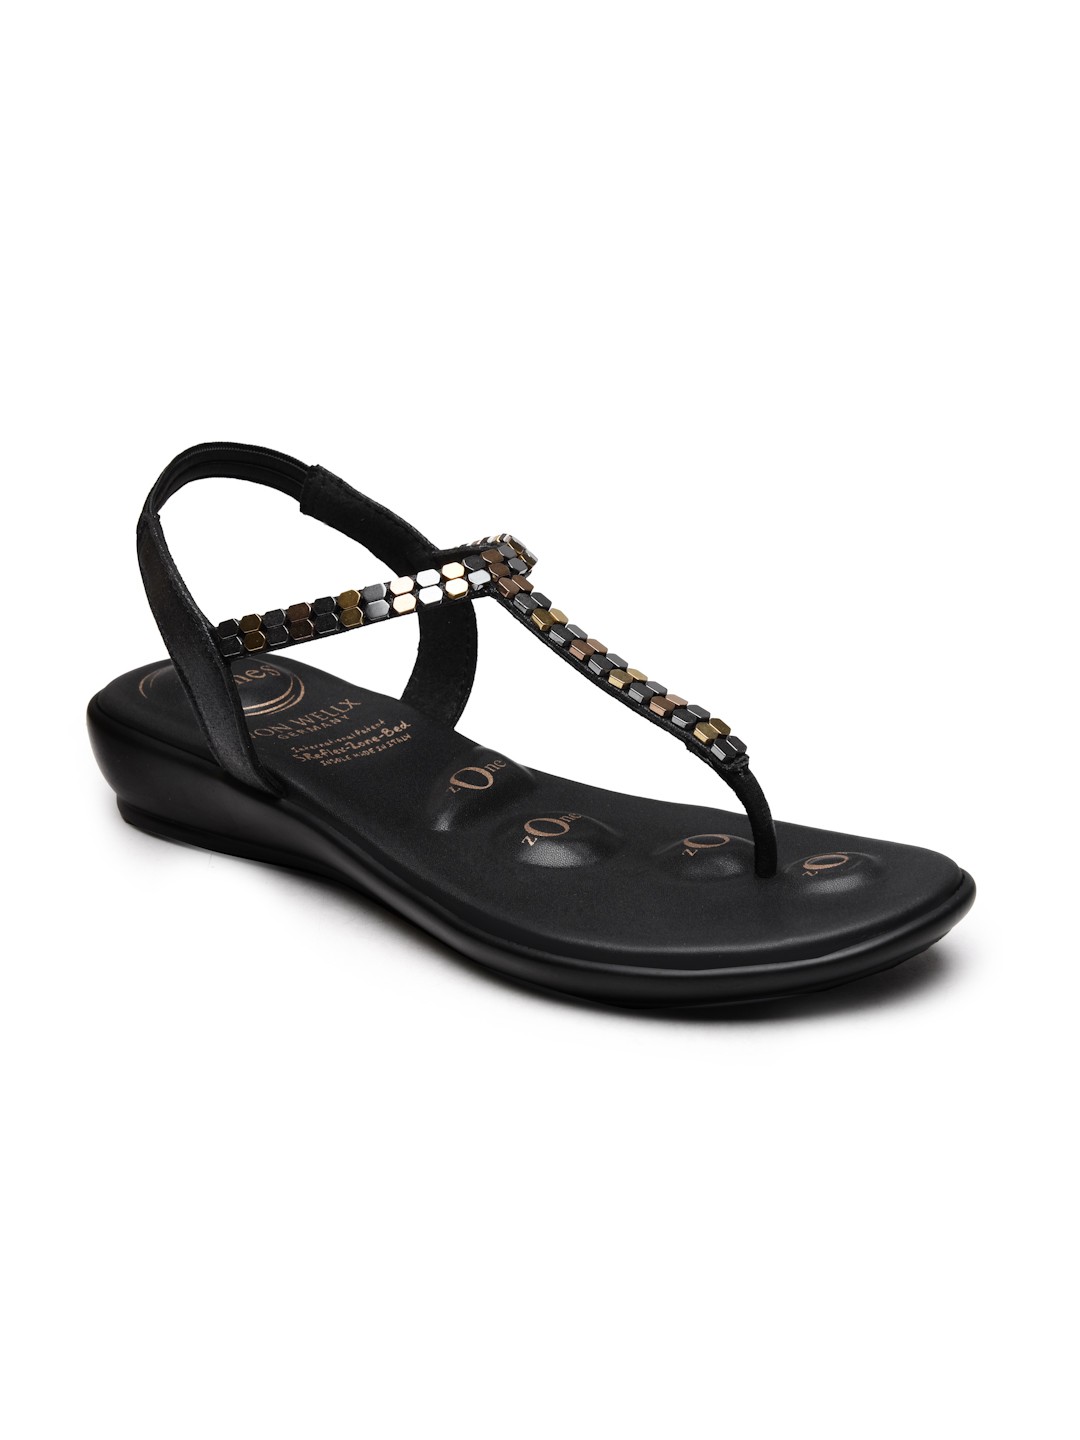 Buy Von Wellx Germany Comfort Women's Black Casual Sandals Regina Online in Pune